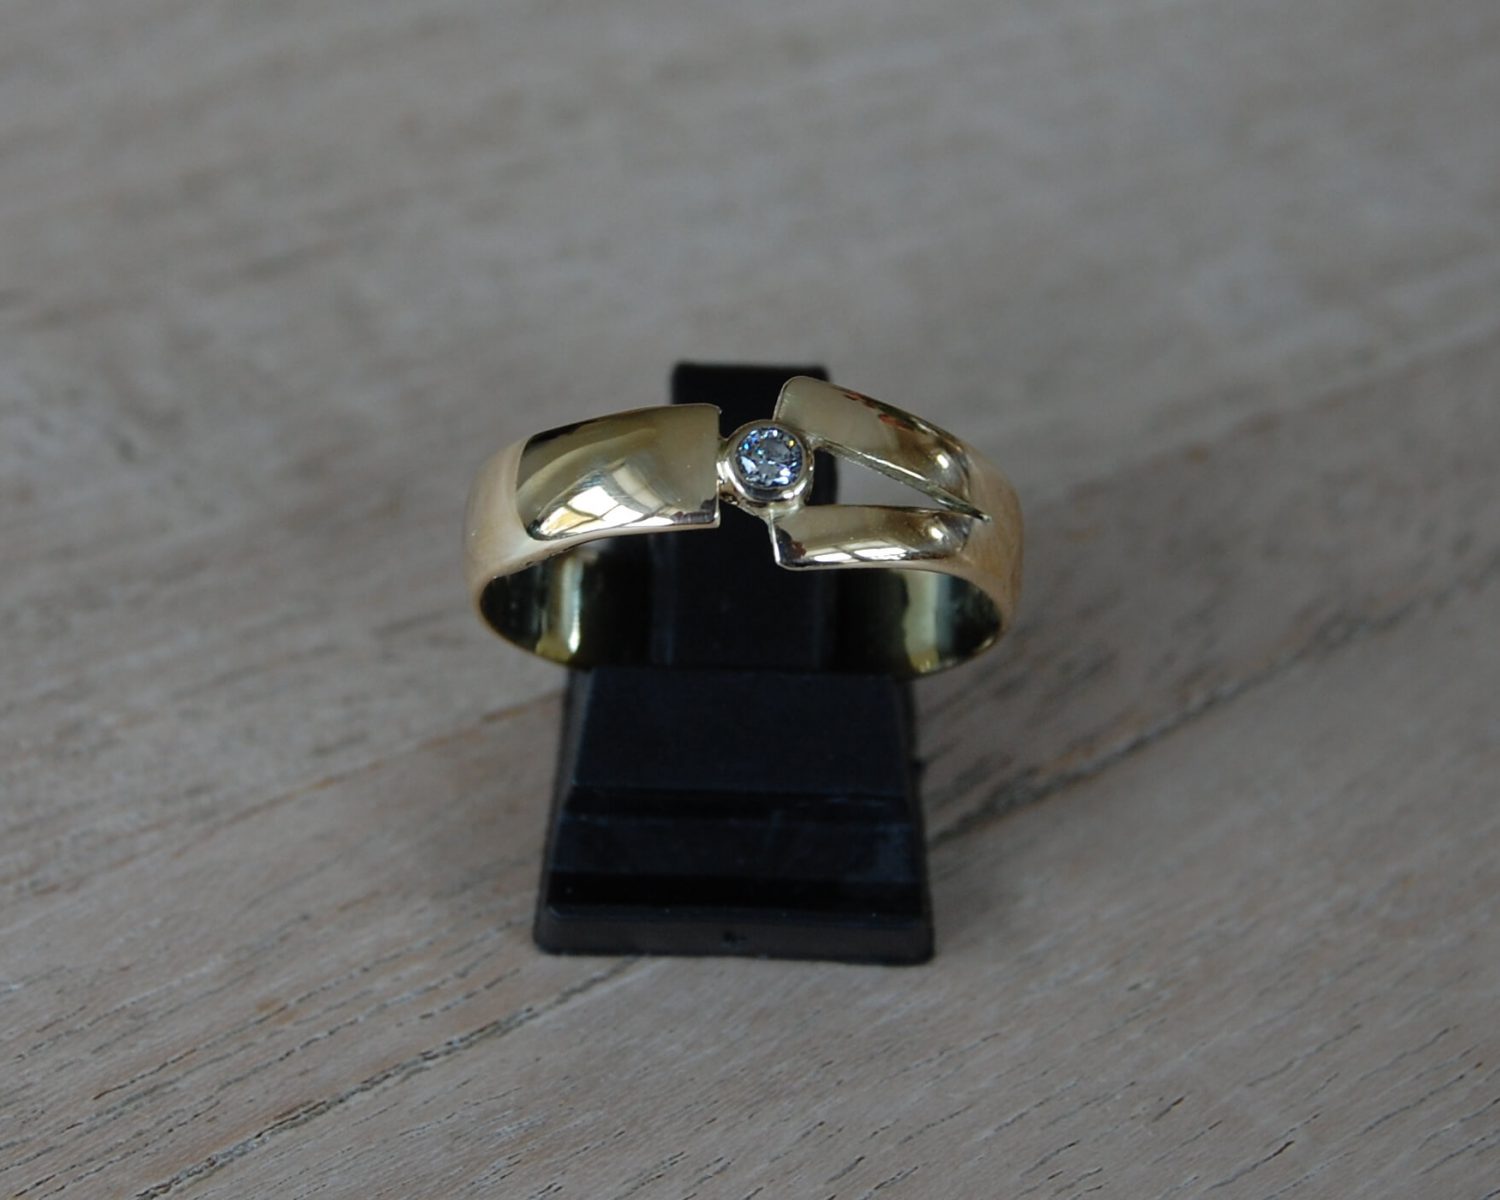 Een aangeleverde trouwring is aangepast - inclusief diamant van 0,07 karaat. Aan de binnenzijde van de ring is wat as opgeslagen.